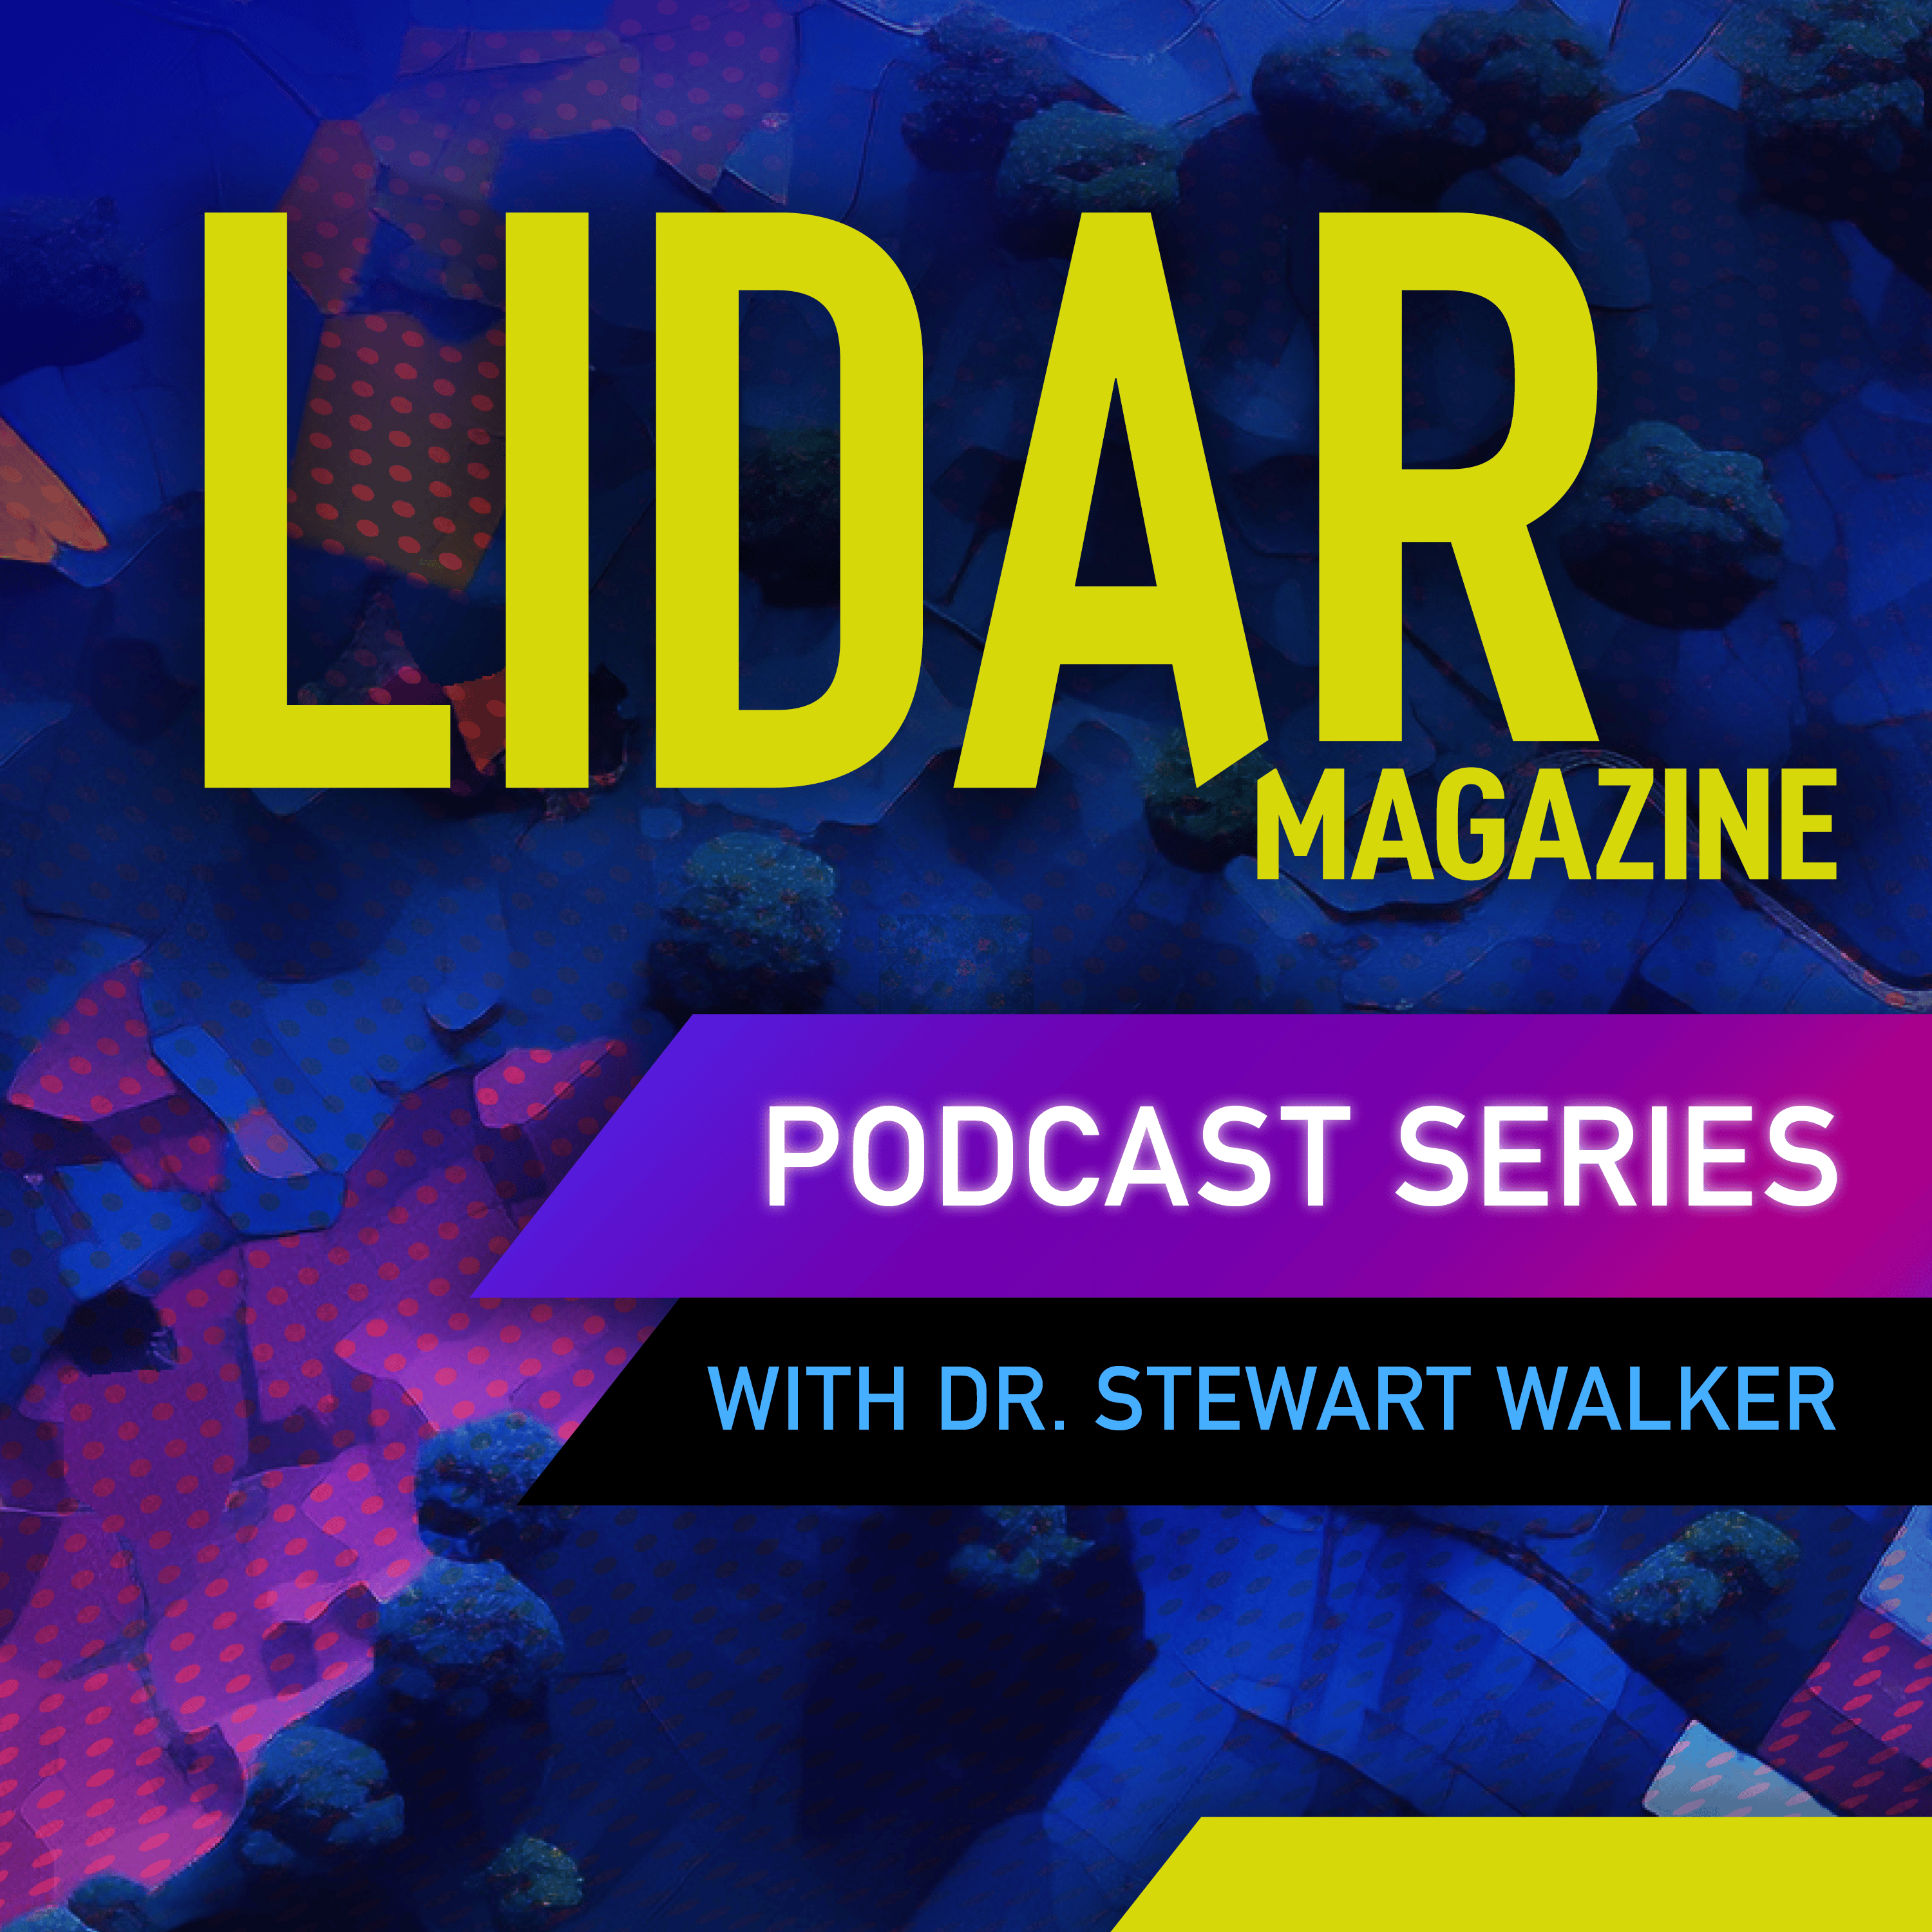 LM Podcast Graphic W Stewart Walker 20240415 Eibi92zqhp